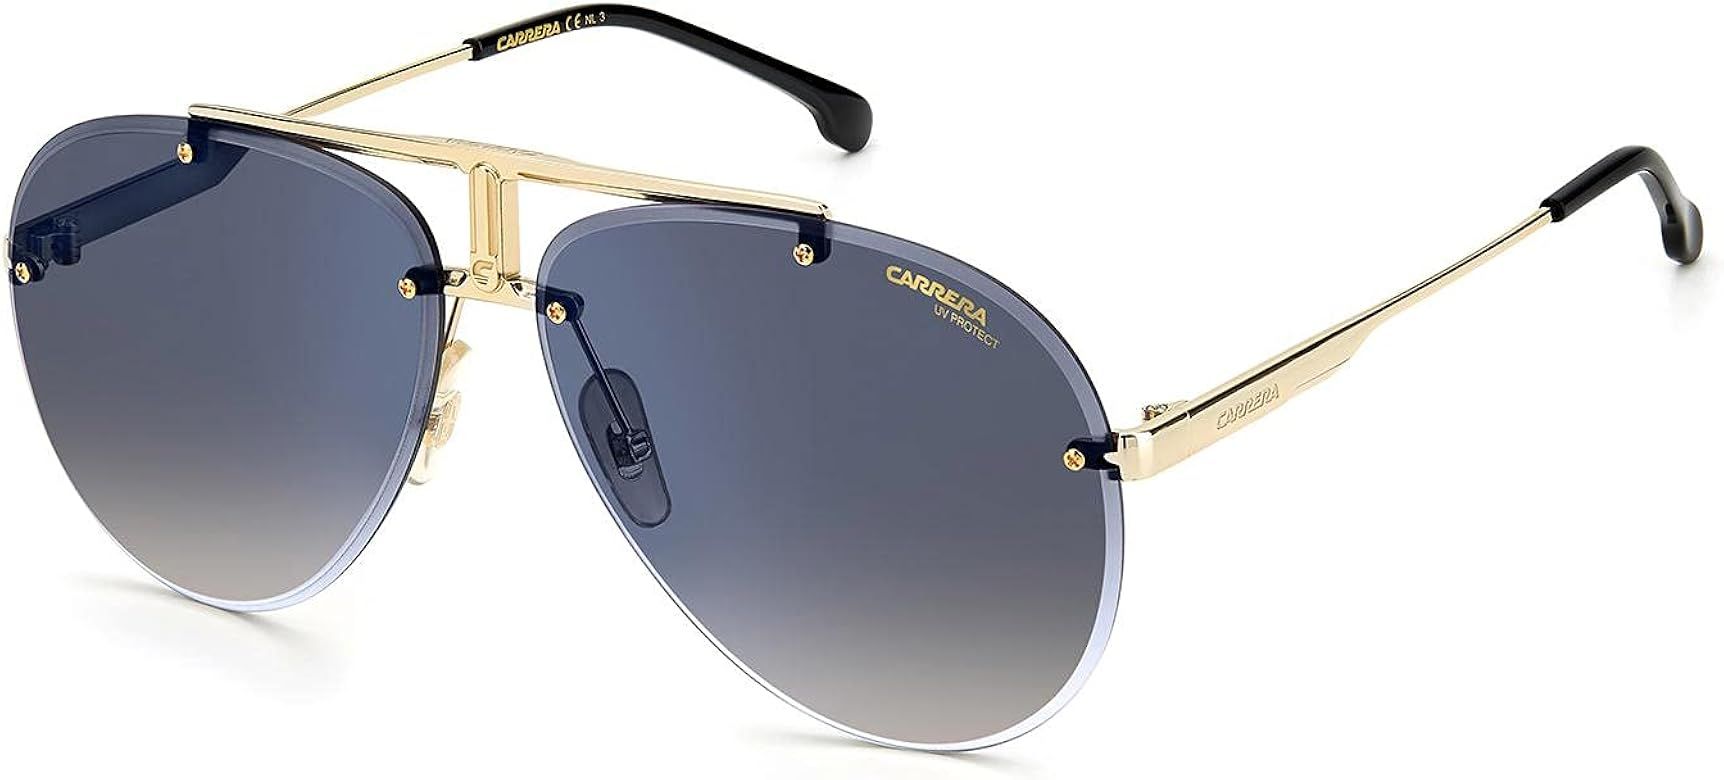 Carrera's sunglasses 1032/S 2M2 Gold/Black | Amazon (US)